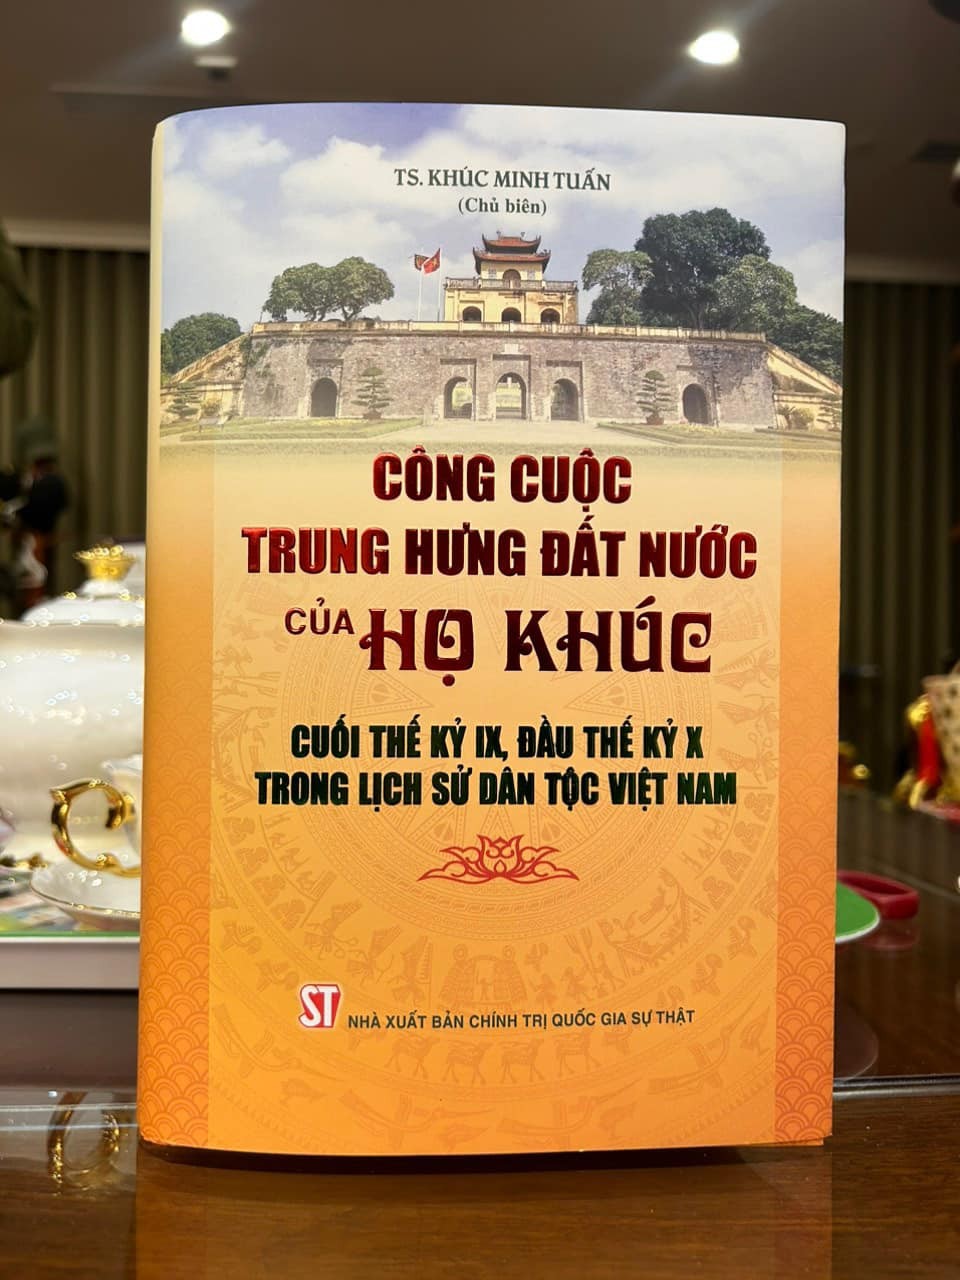 Ra mắt cuốn sách “Công cuộc trung hưng đất nước của họ Khúc cuối thế kỷ IX, đầu thế kỷ X trong lịch sử dân tộc Việt Nam”